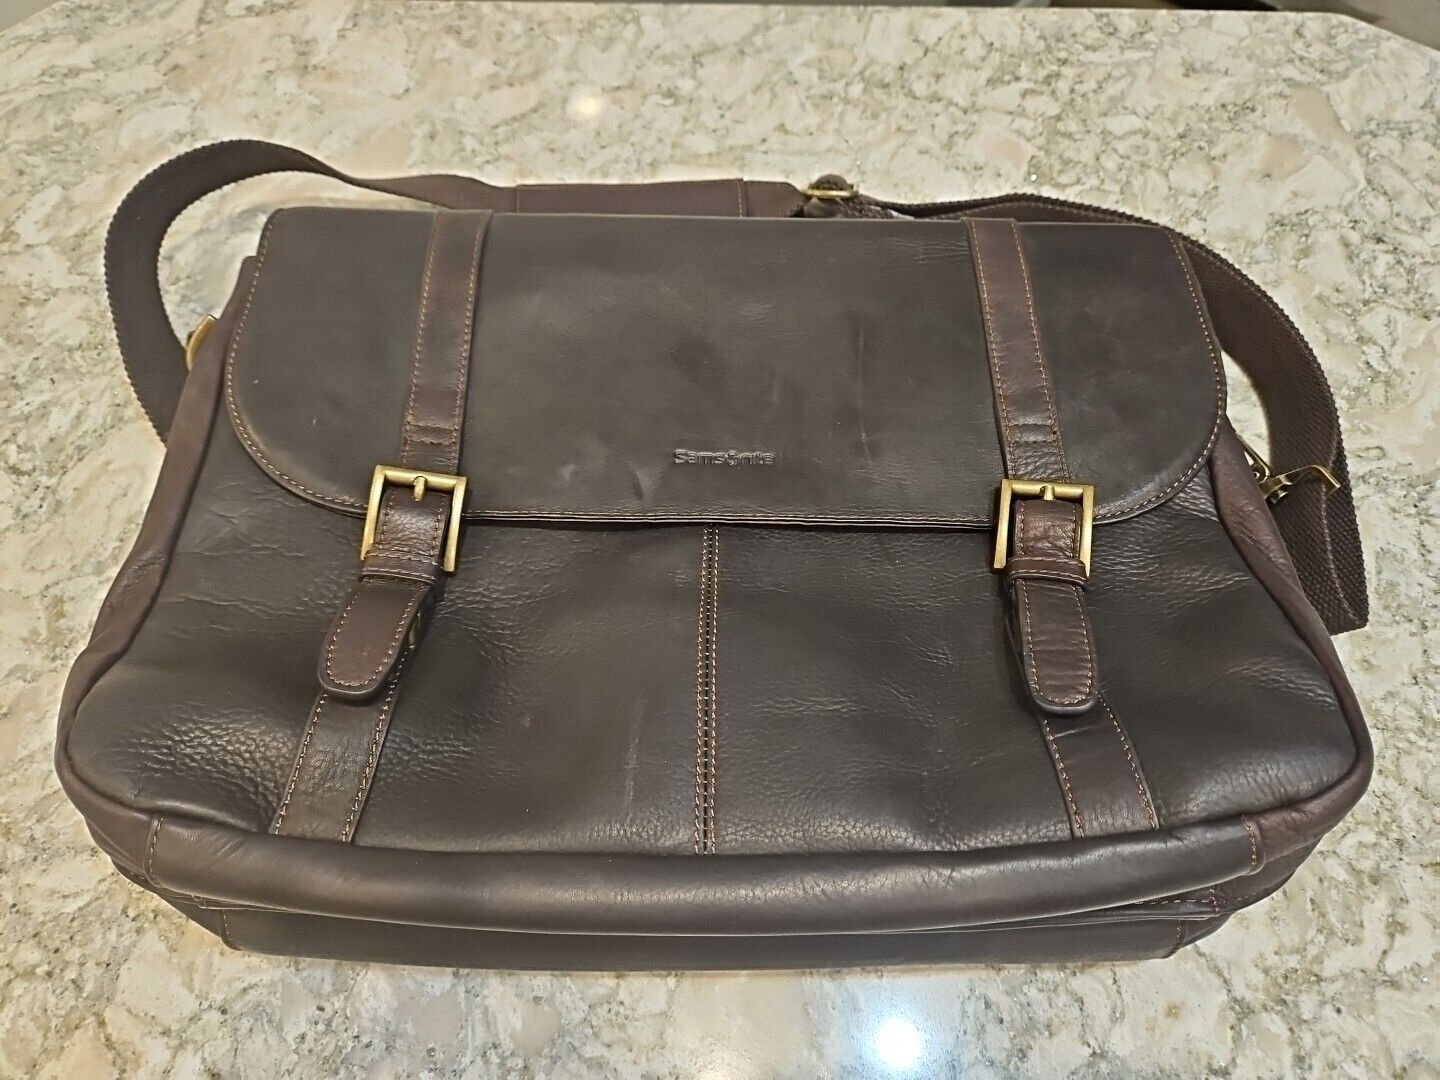 Samsonite Brown Leather Laptop Business Bag Briefcase Messenger Shoulder Bag EUC